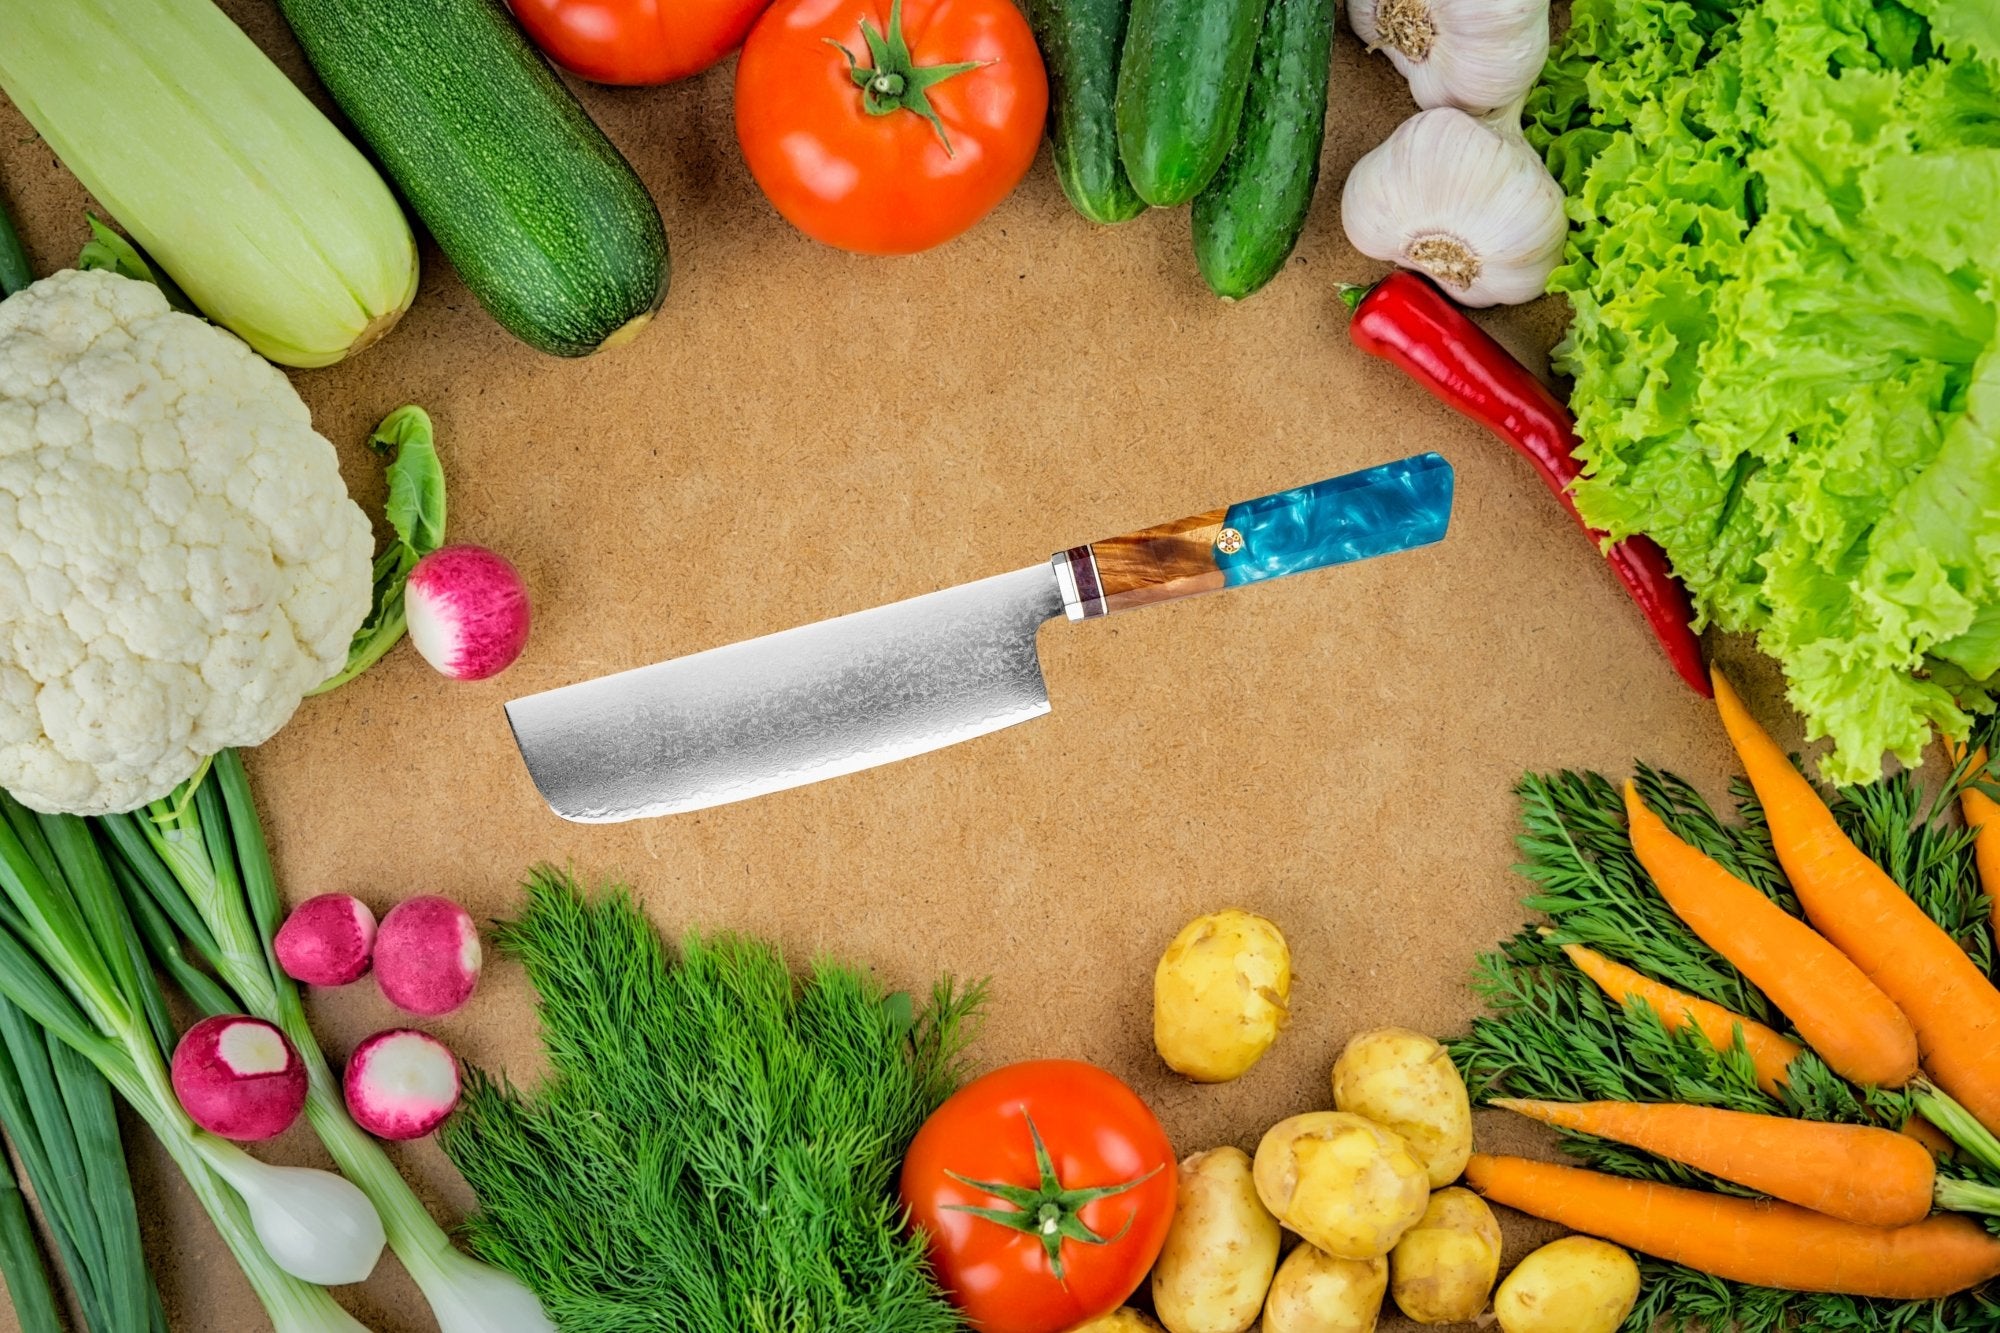 Couper les légumes: Quel est le meilleur couteau à légumes? – santokuknives